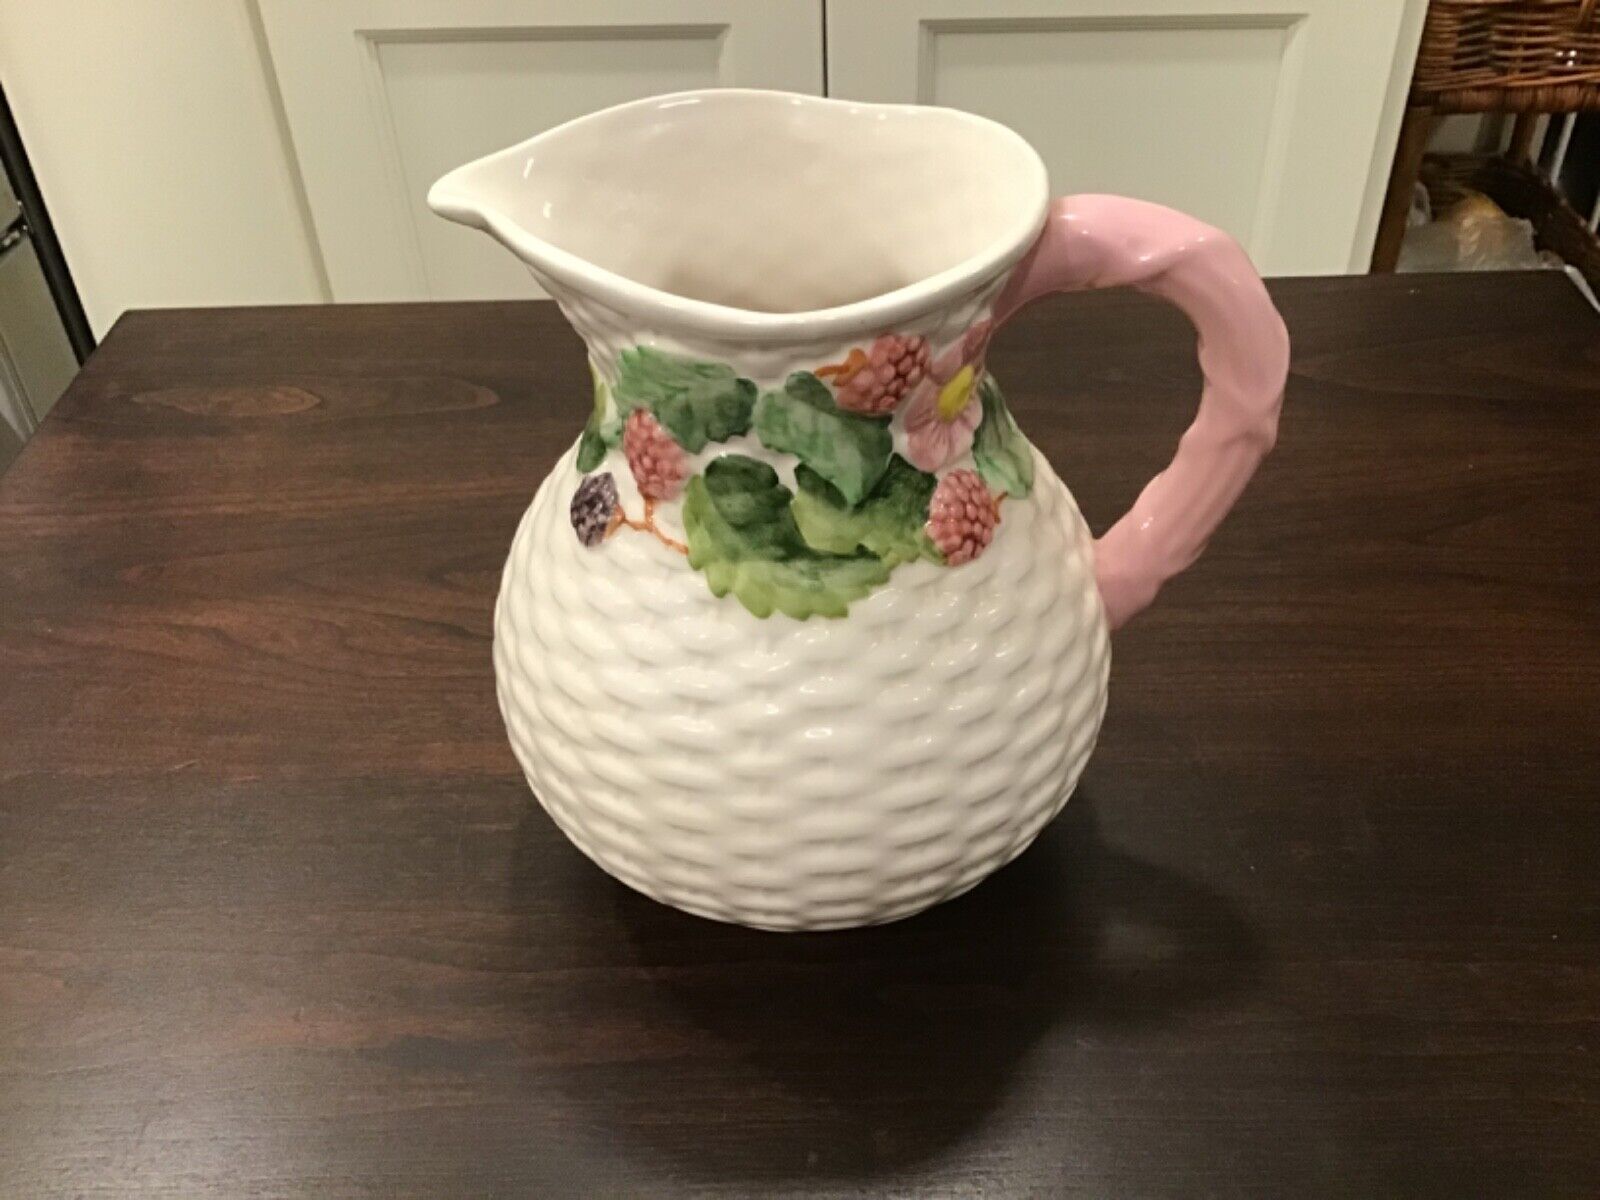 Berries Vintage ceramic pitcher, embossed raspberries/blackberries, basket weave